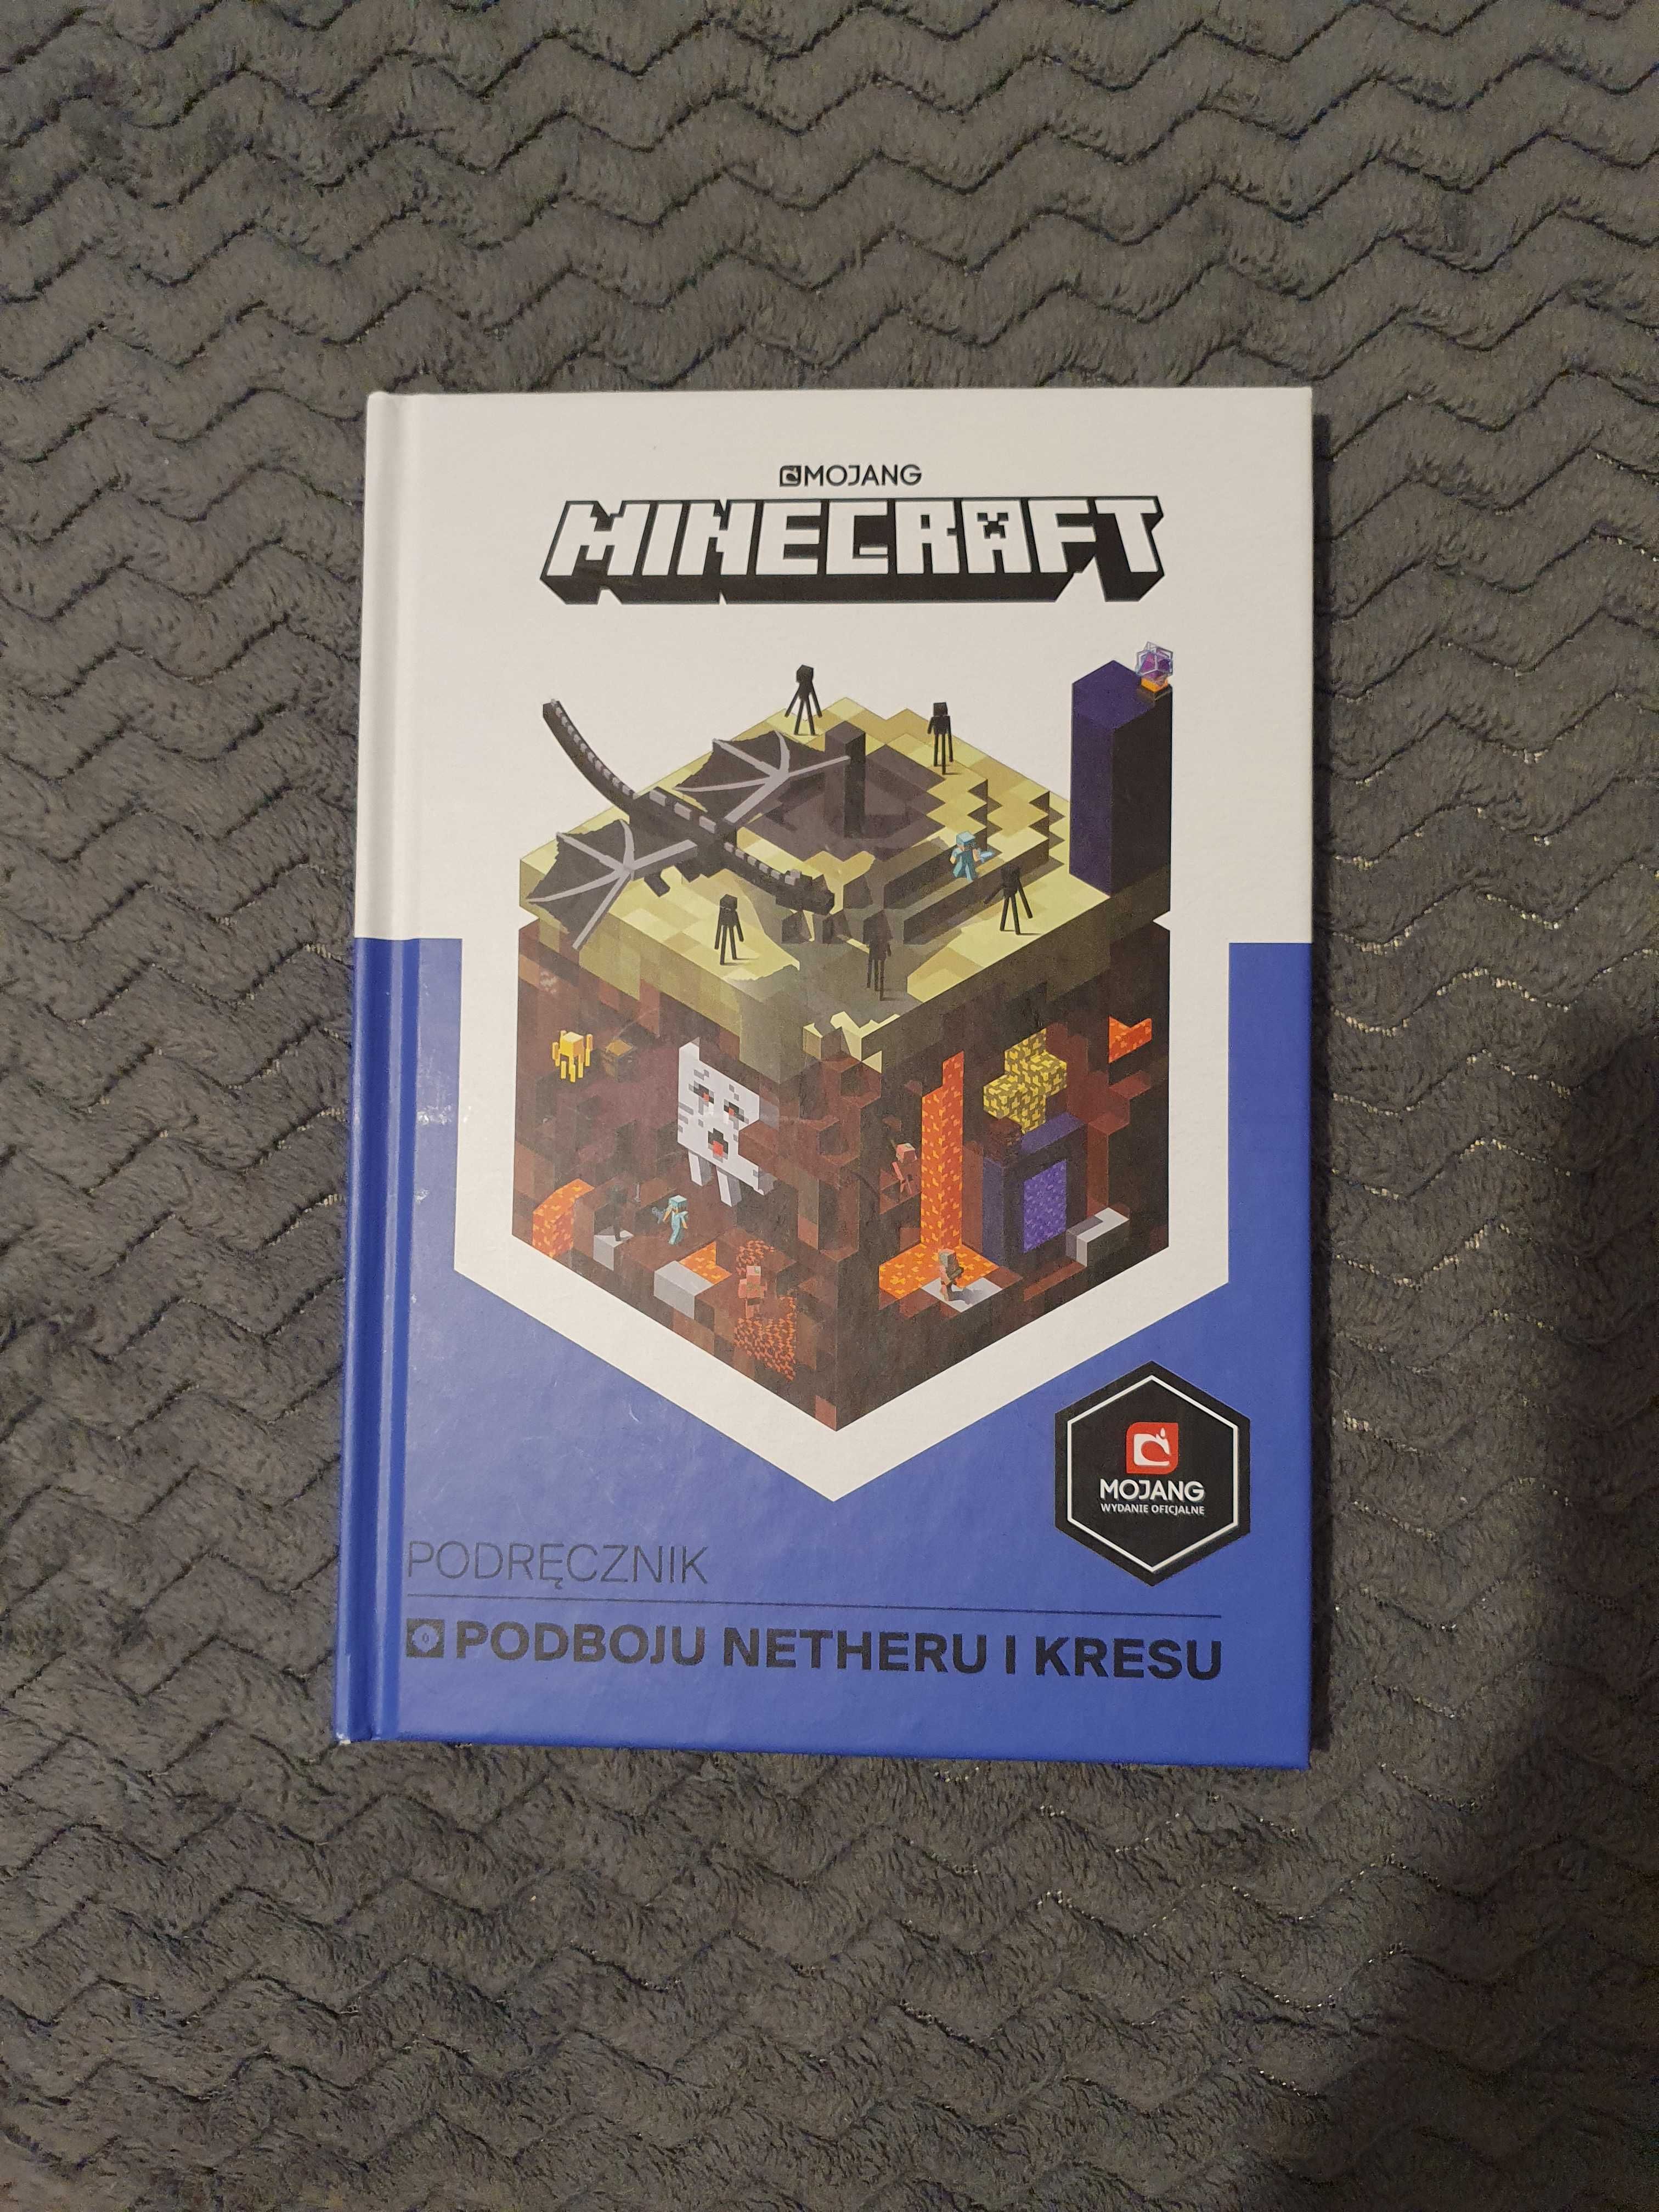 Książka MINECRAFT dla małego fana gry.